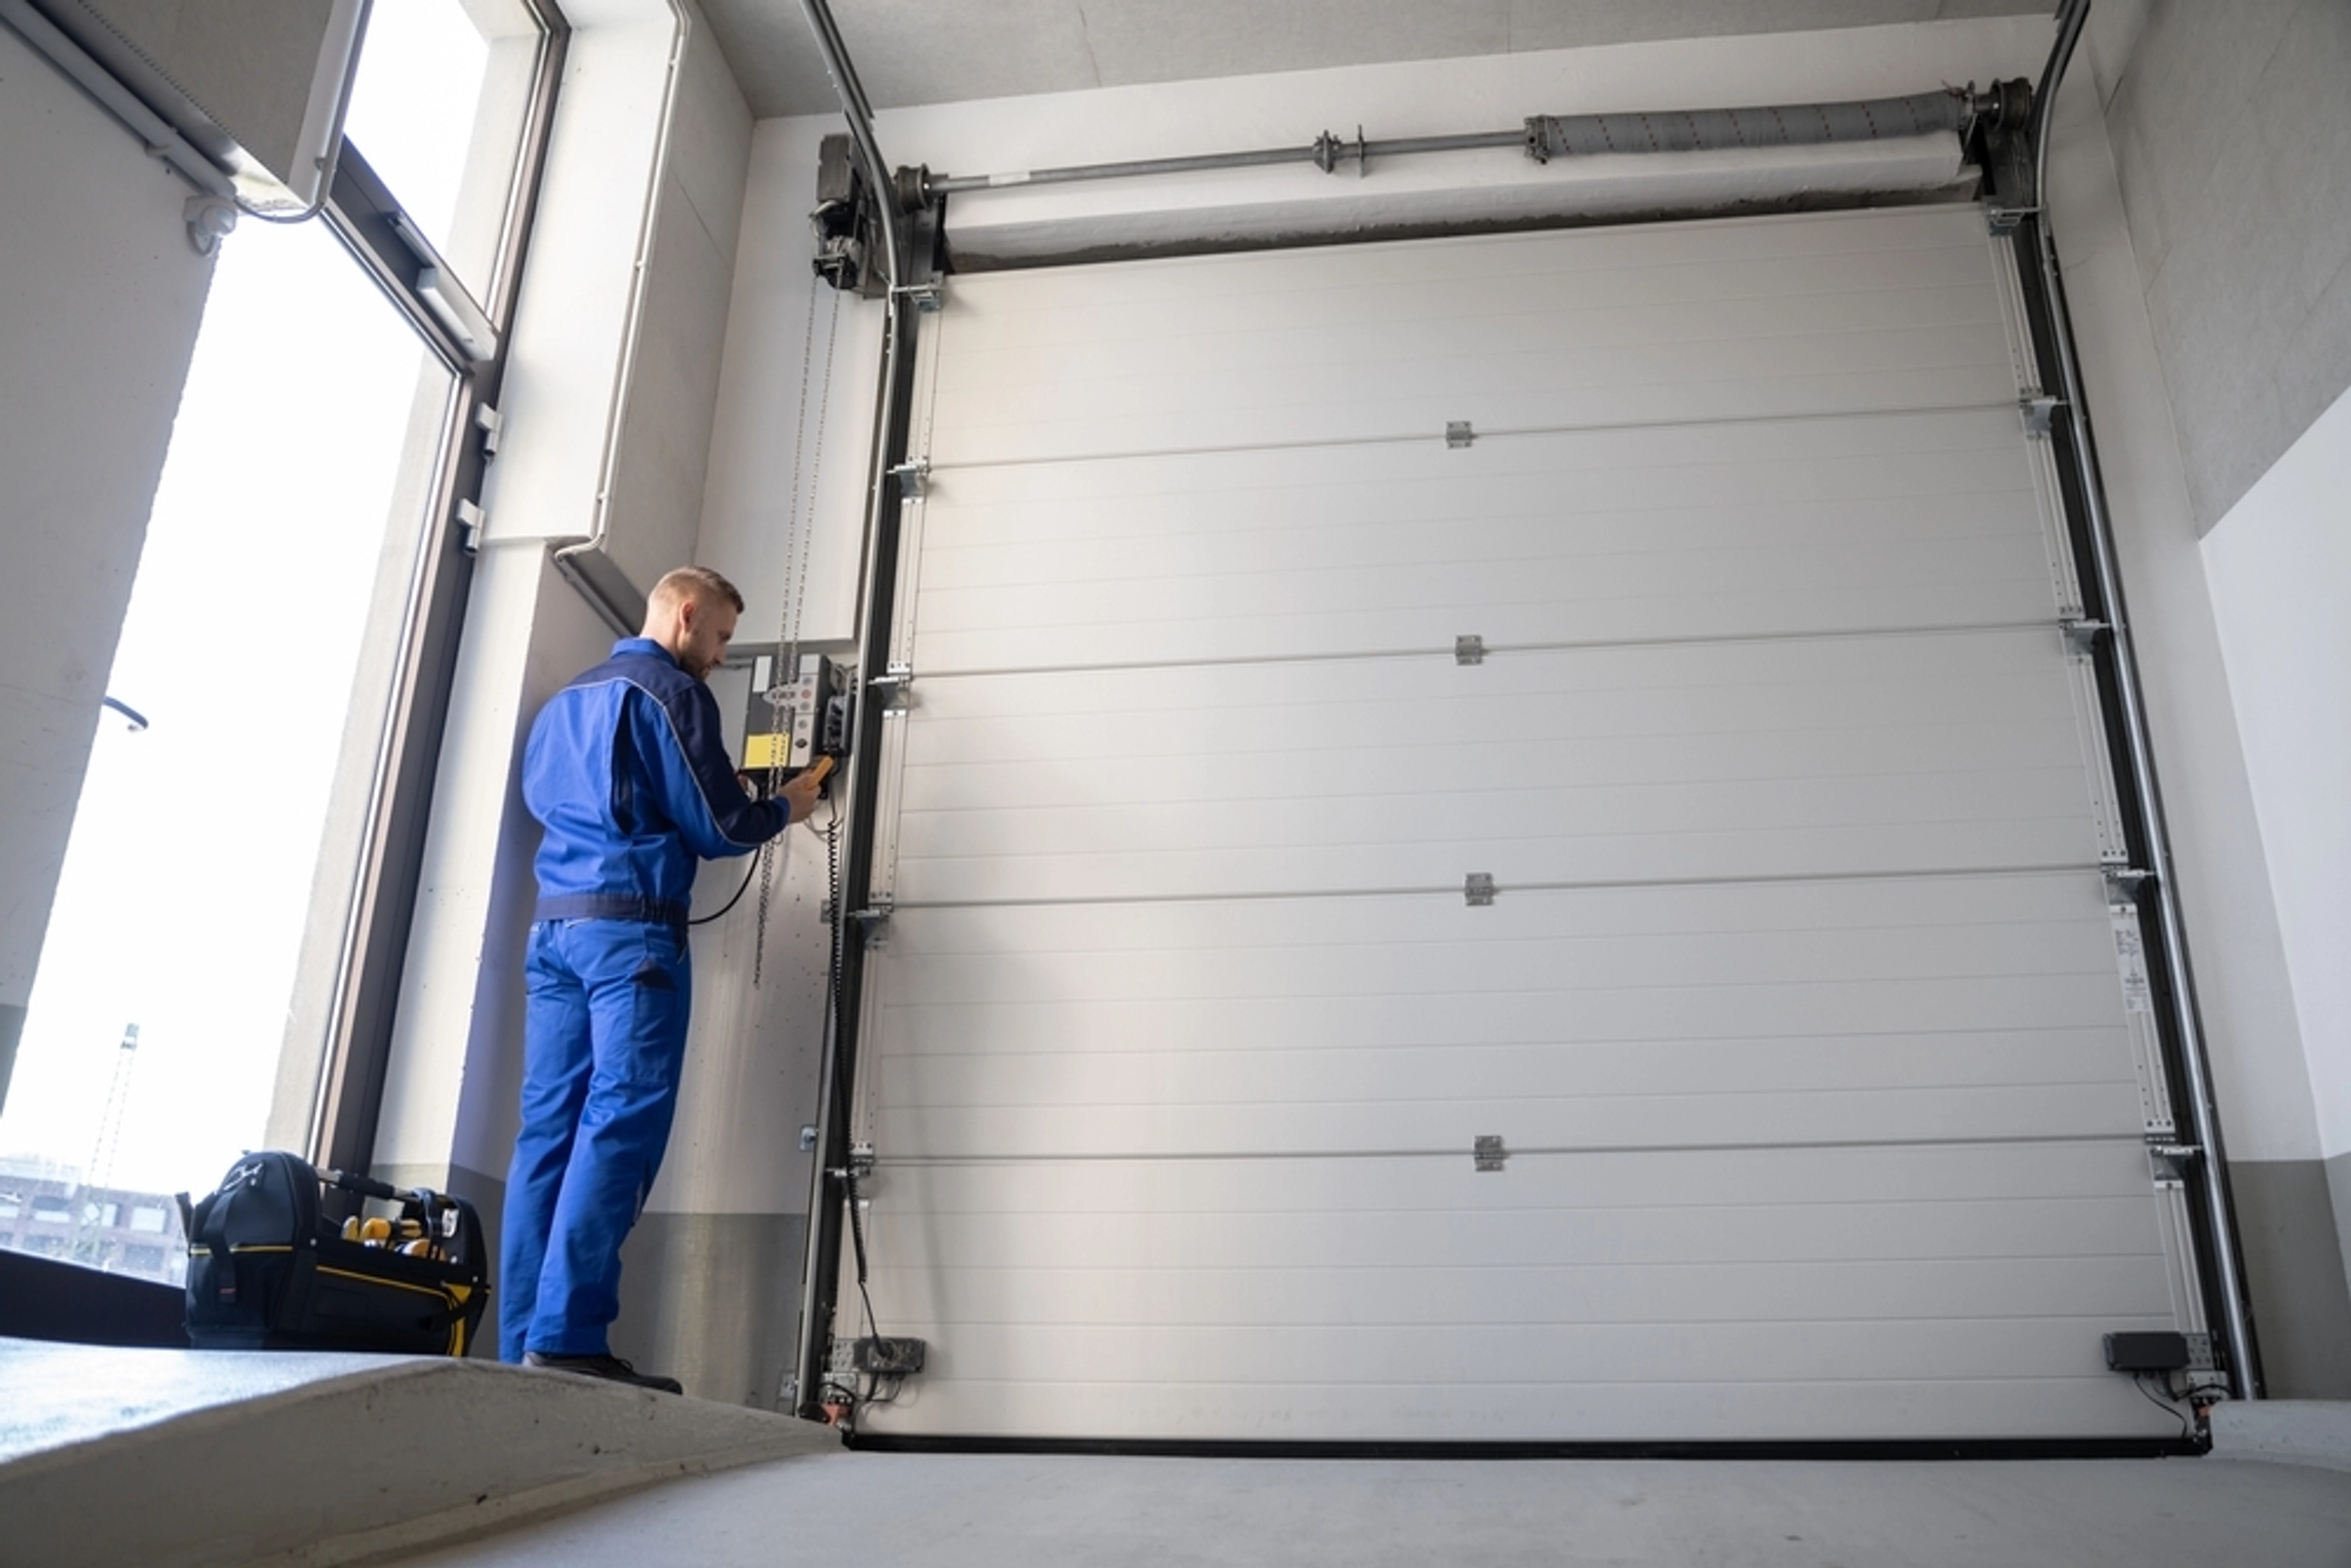 Comment réparer une porte de garage sectionnelle motorisée?